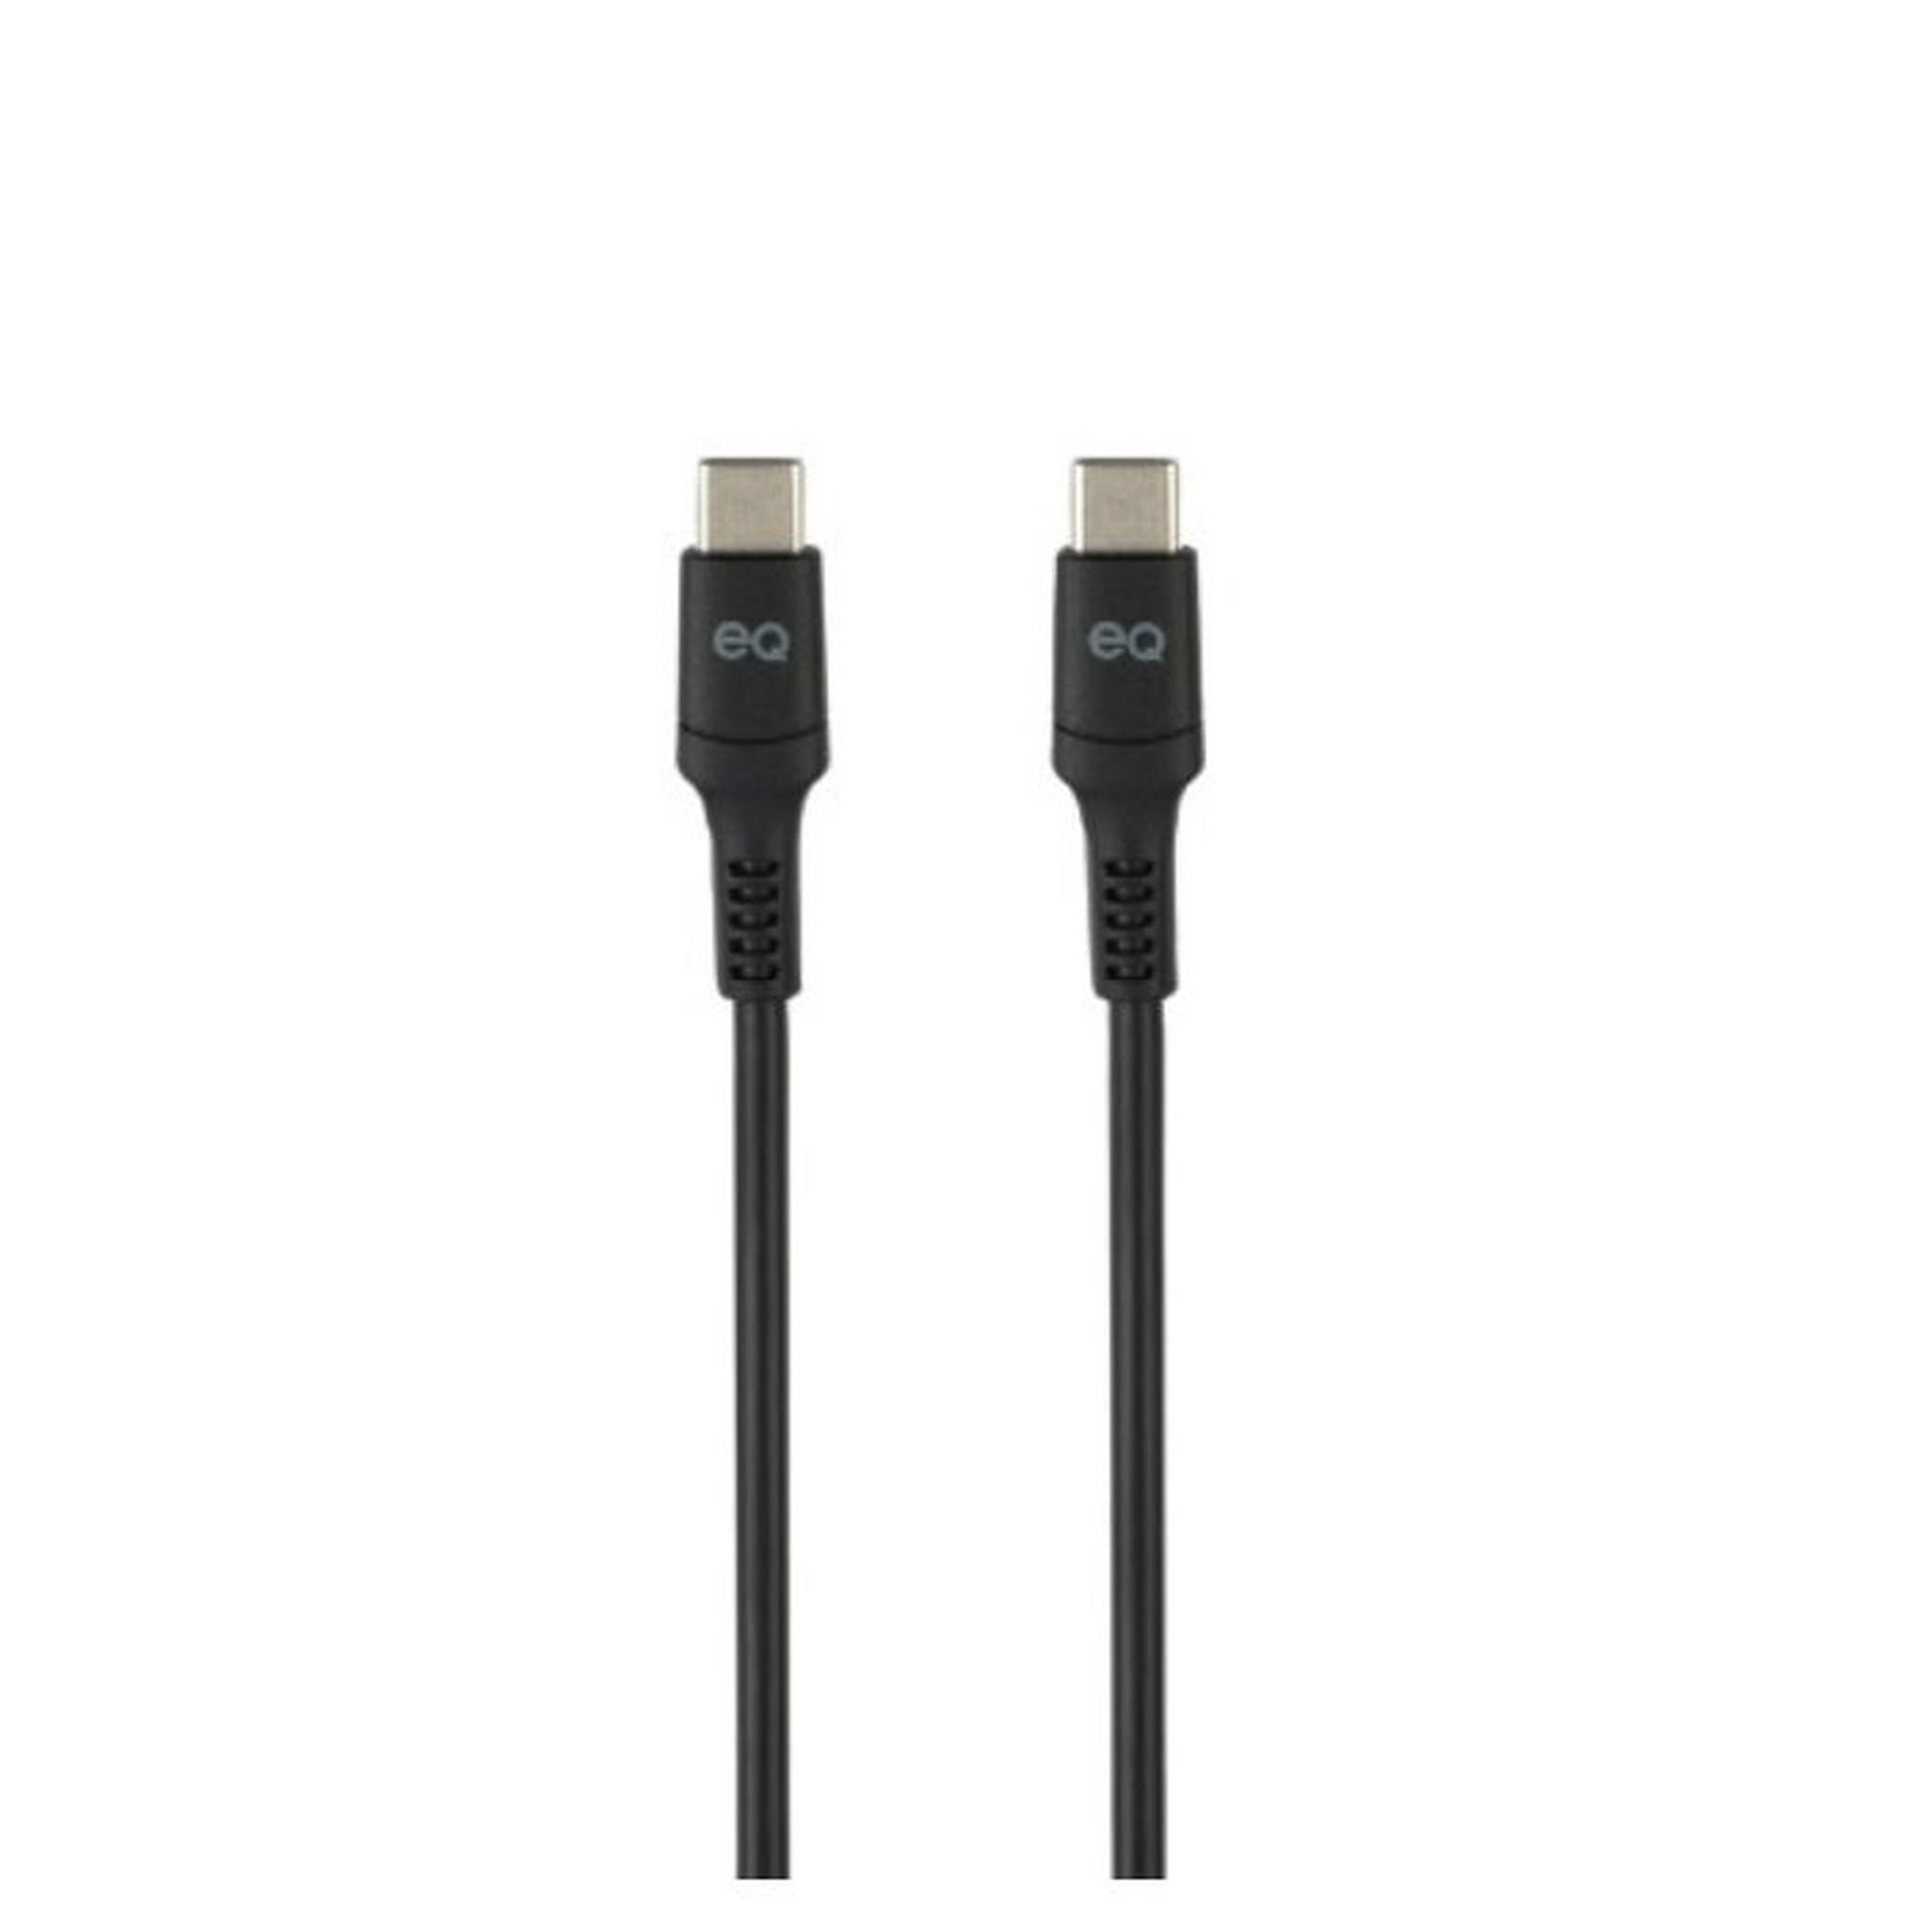 EQ USB-C To USB-C Charing Cable, 3m, CC-130D-3M-BLK – Black